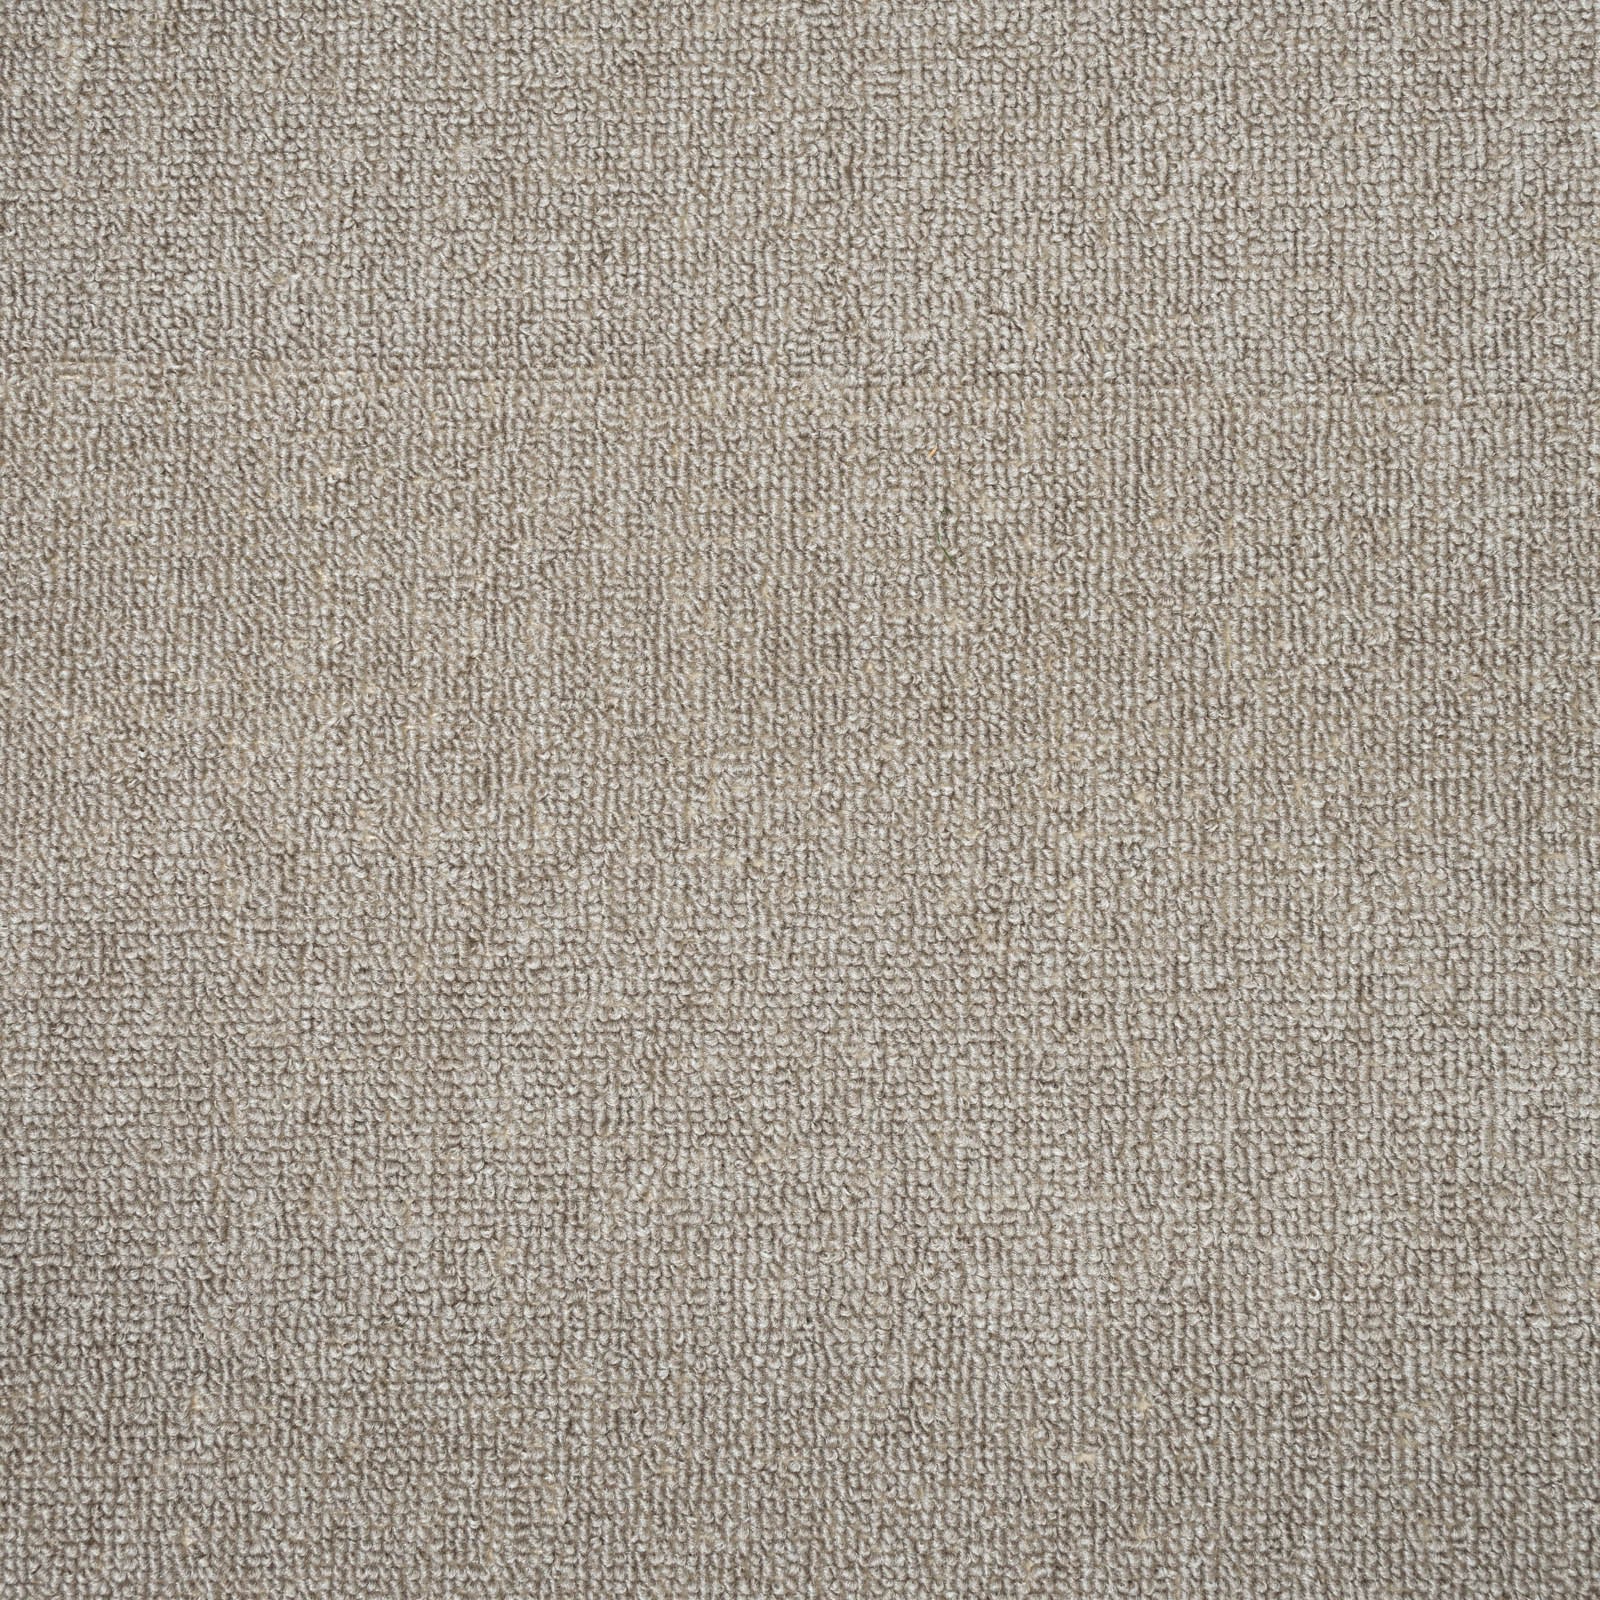 Grey Beige Dundee Loop Carpet